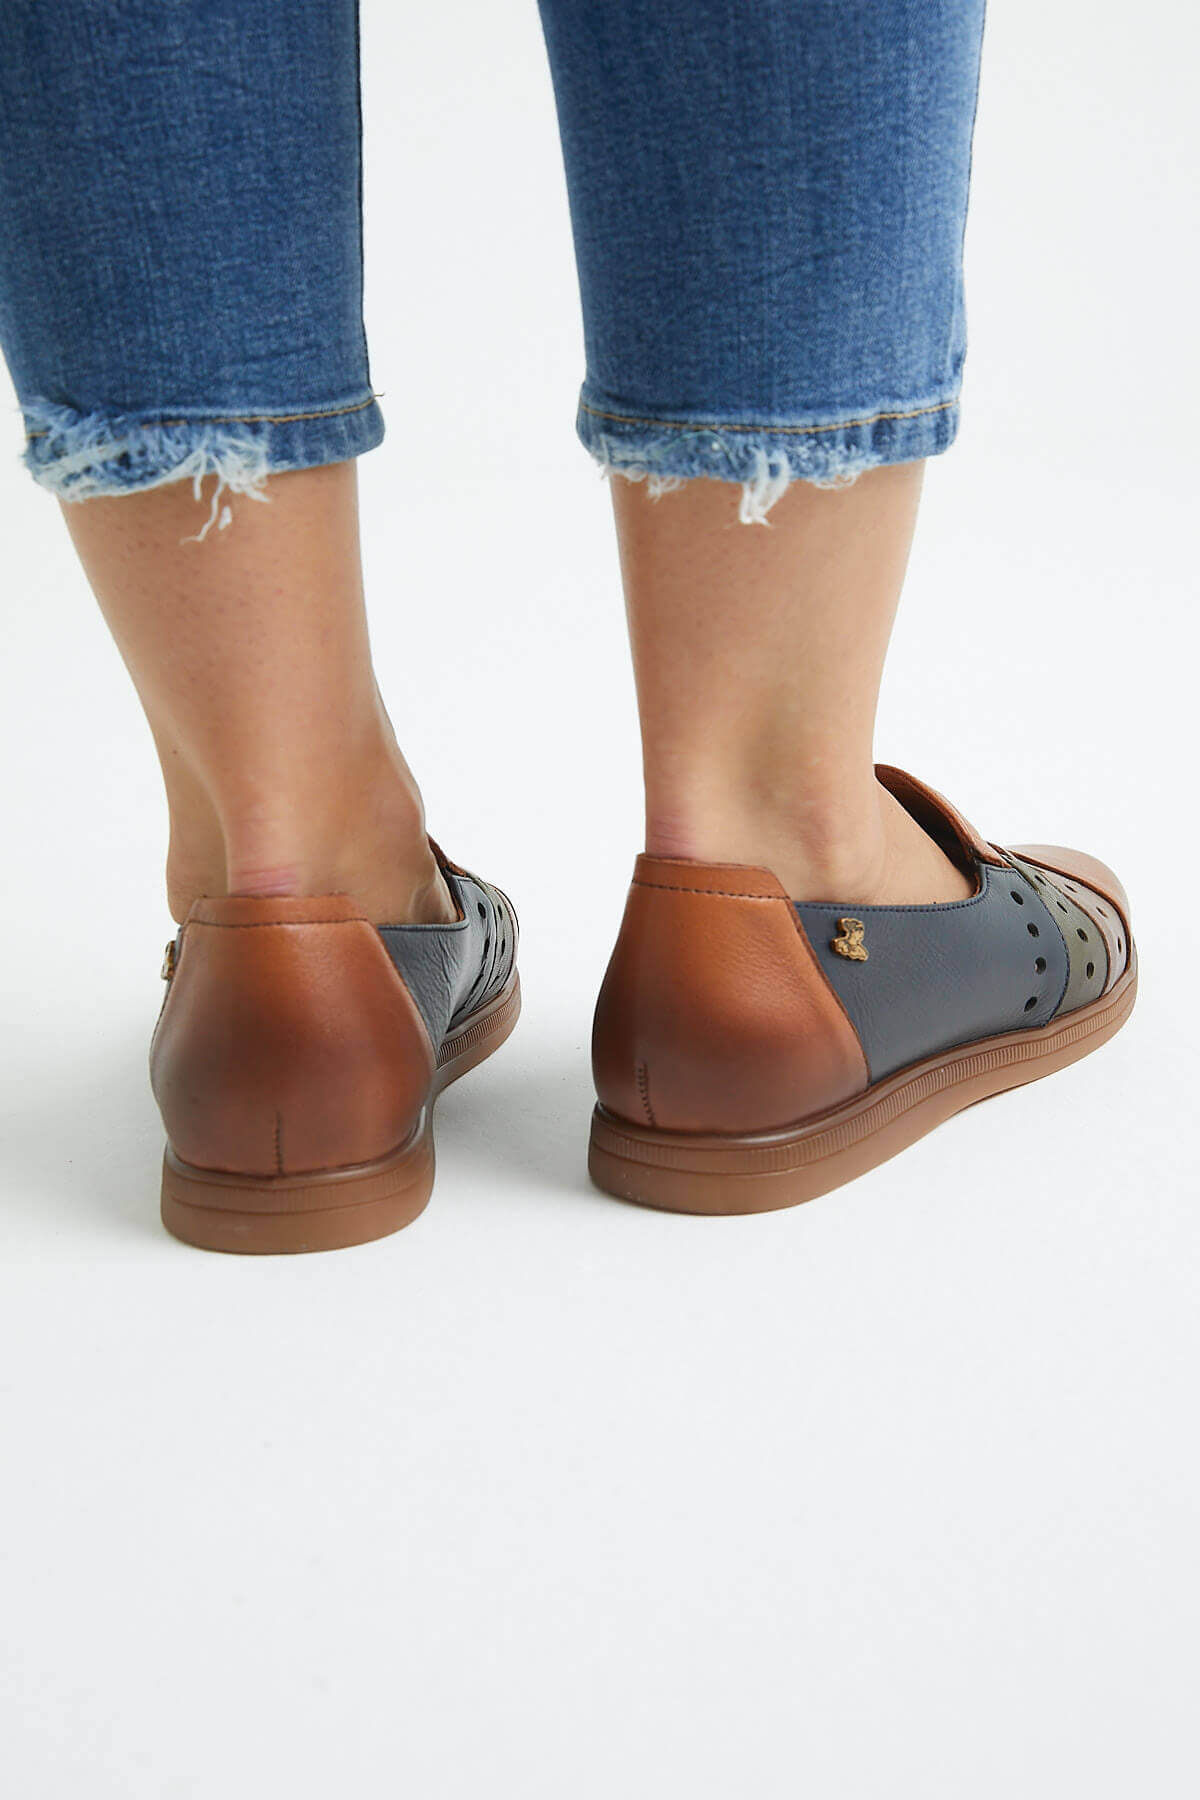 Kadın Yazlık Comfort Deri Ayakkabı Taba 1813672Y - Thumbnail